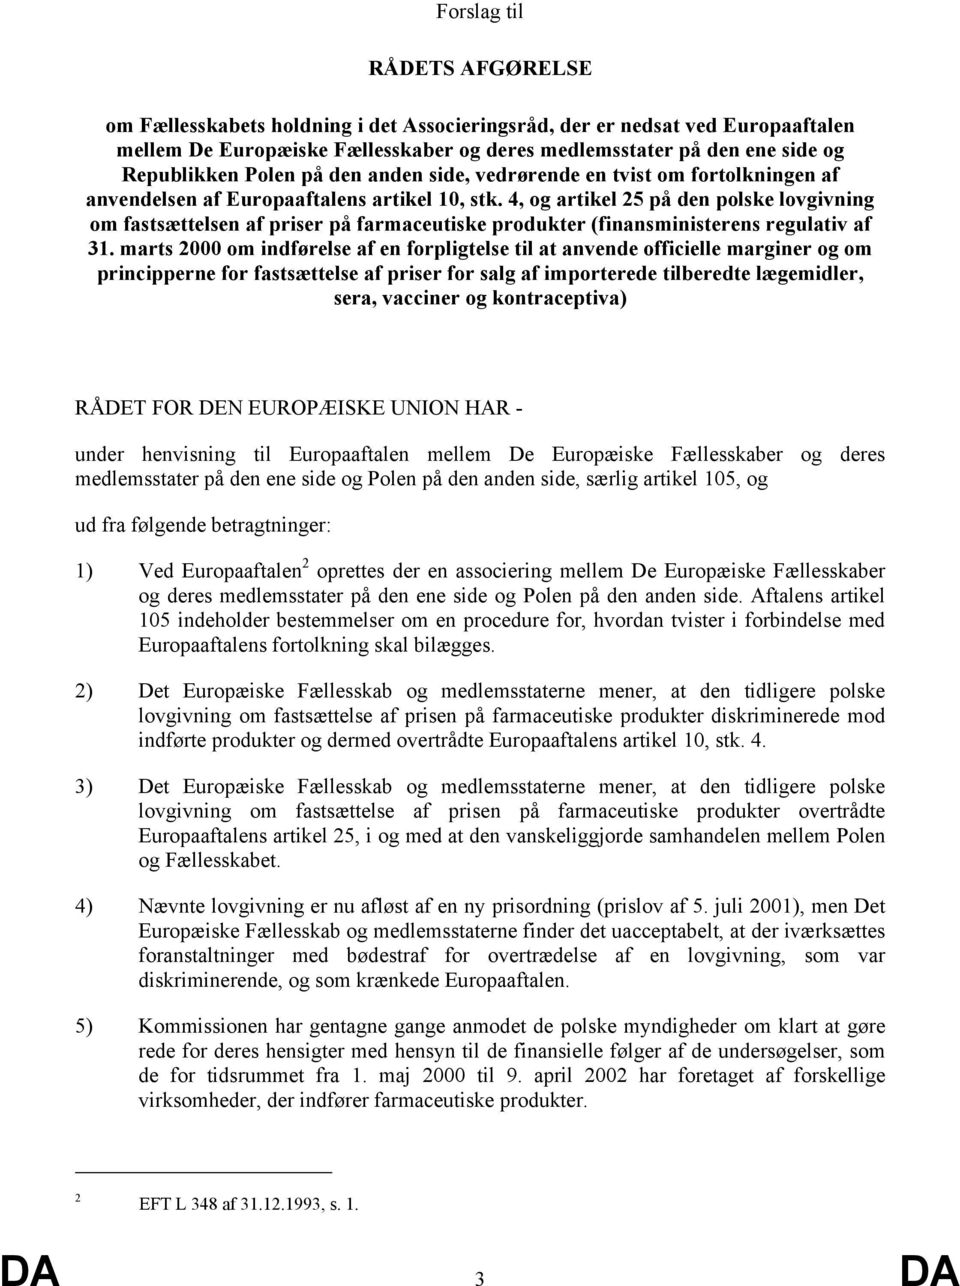 4, og artikel 25 på den polske lovgivning om fastsættelsen af priser på farmaceutiske produkter (finansministerens regulativ af 31.